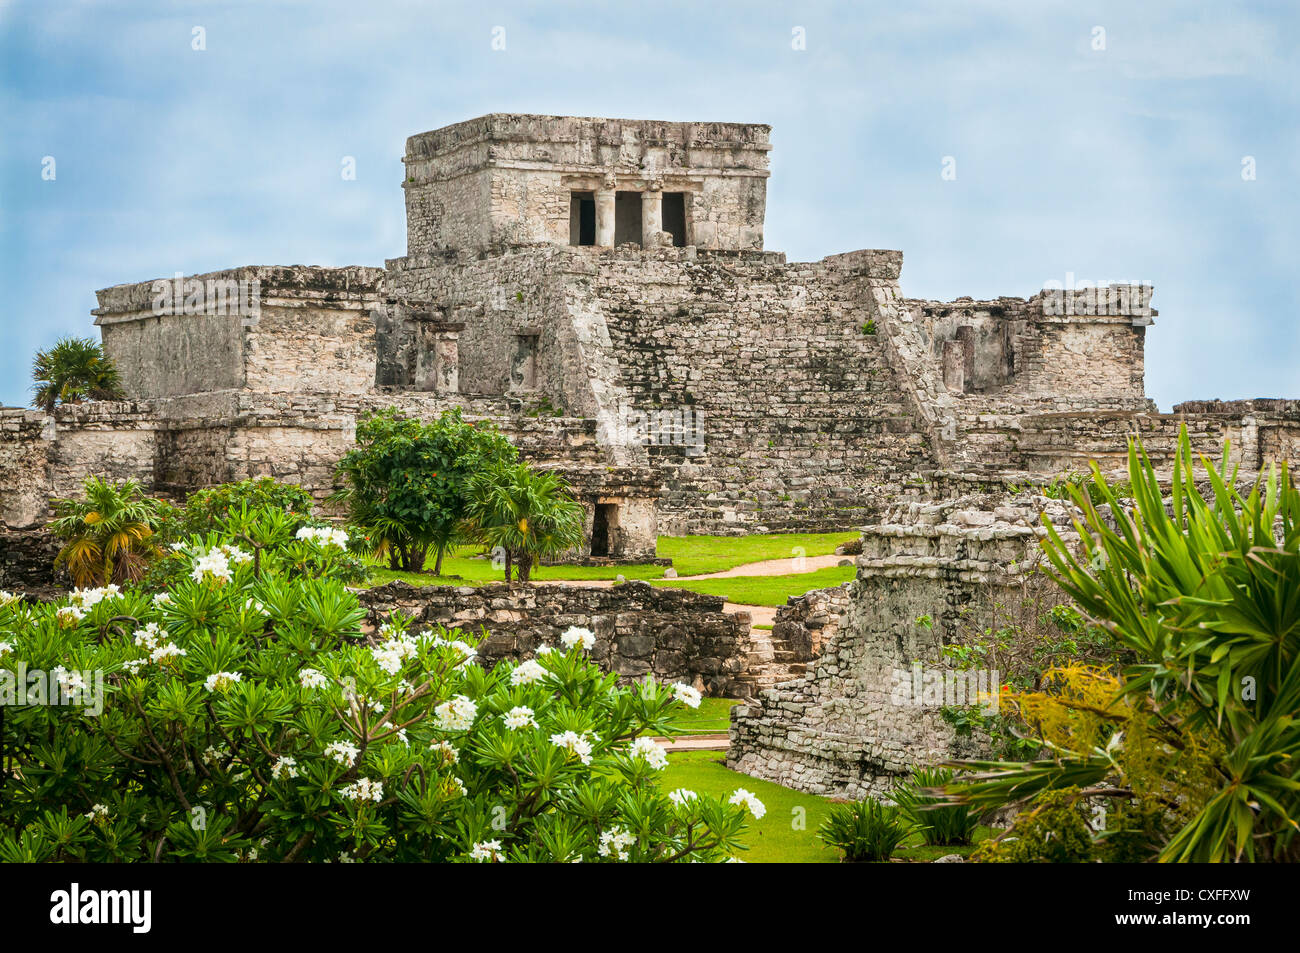 El Castillo de ruines mayas de Tulum, péninsule du Yucatan, au Mexique. Banque D'Images